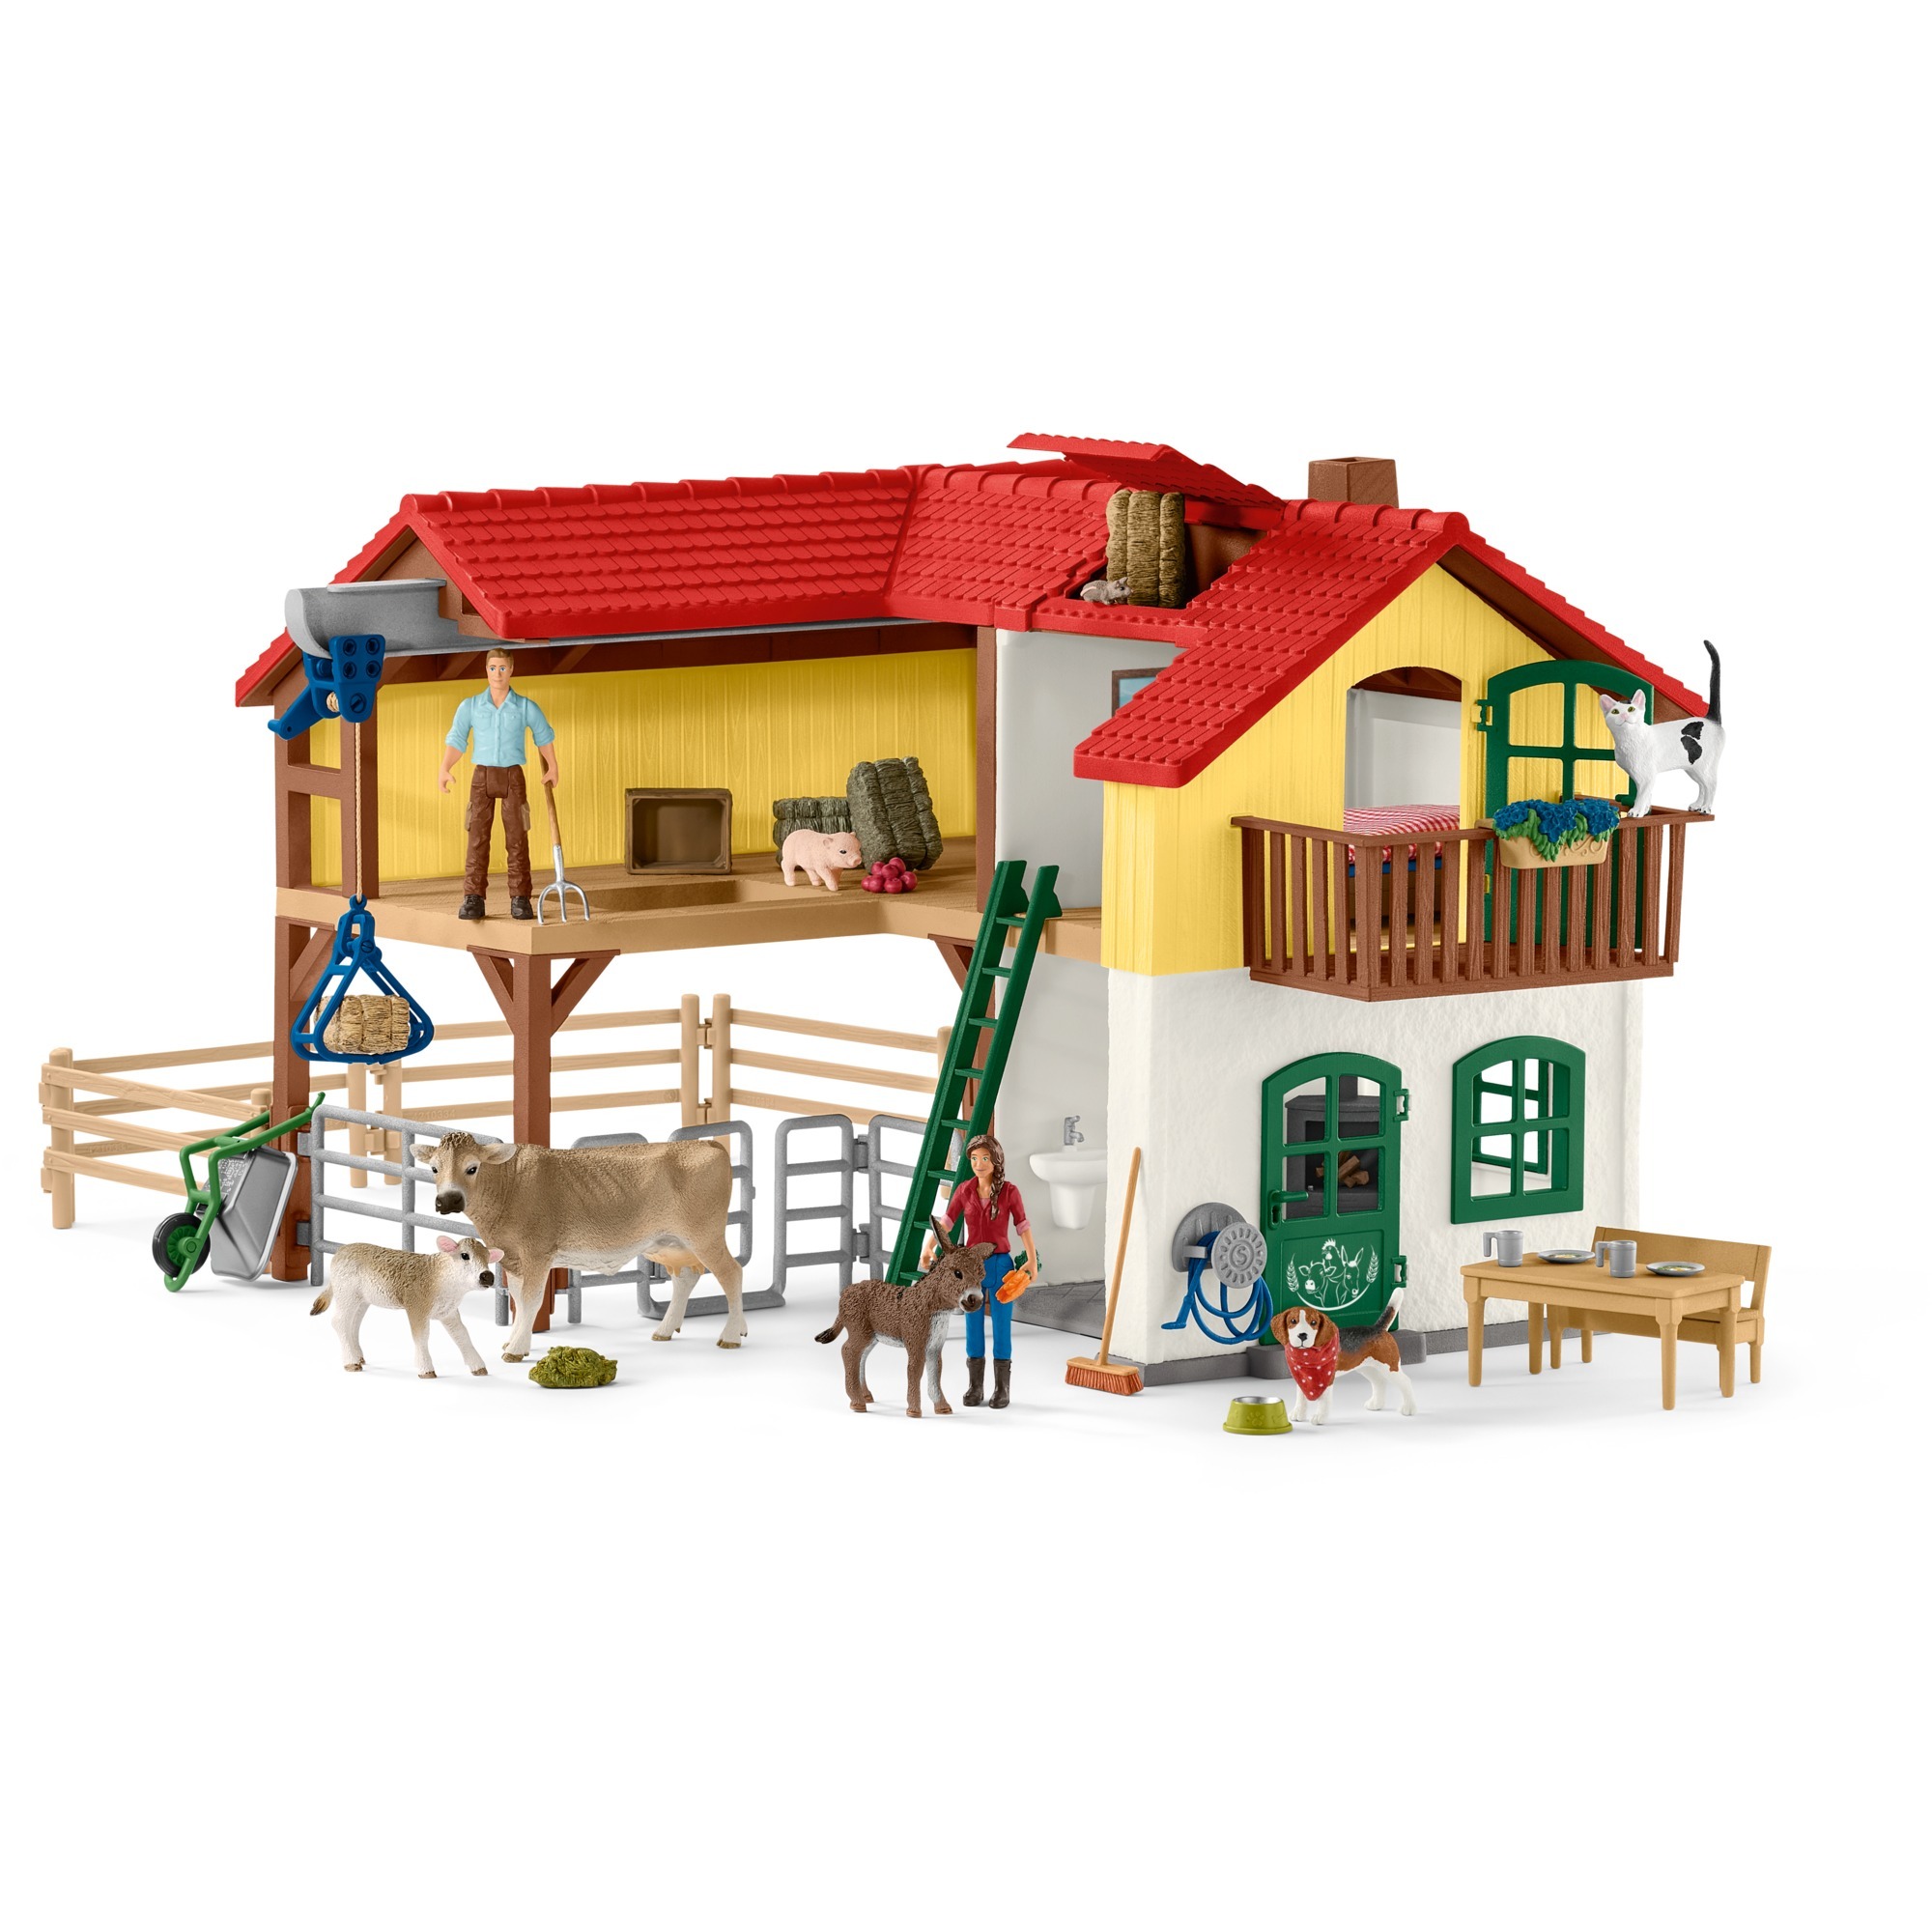 Spielzeug: Schleich Farm World Bauernhaus mit Stall und Tieren, Spielfigur